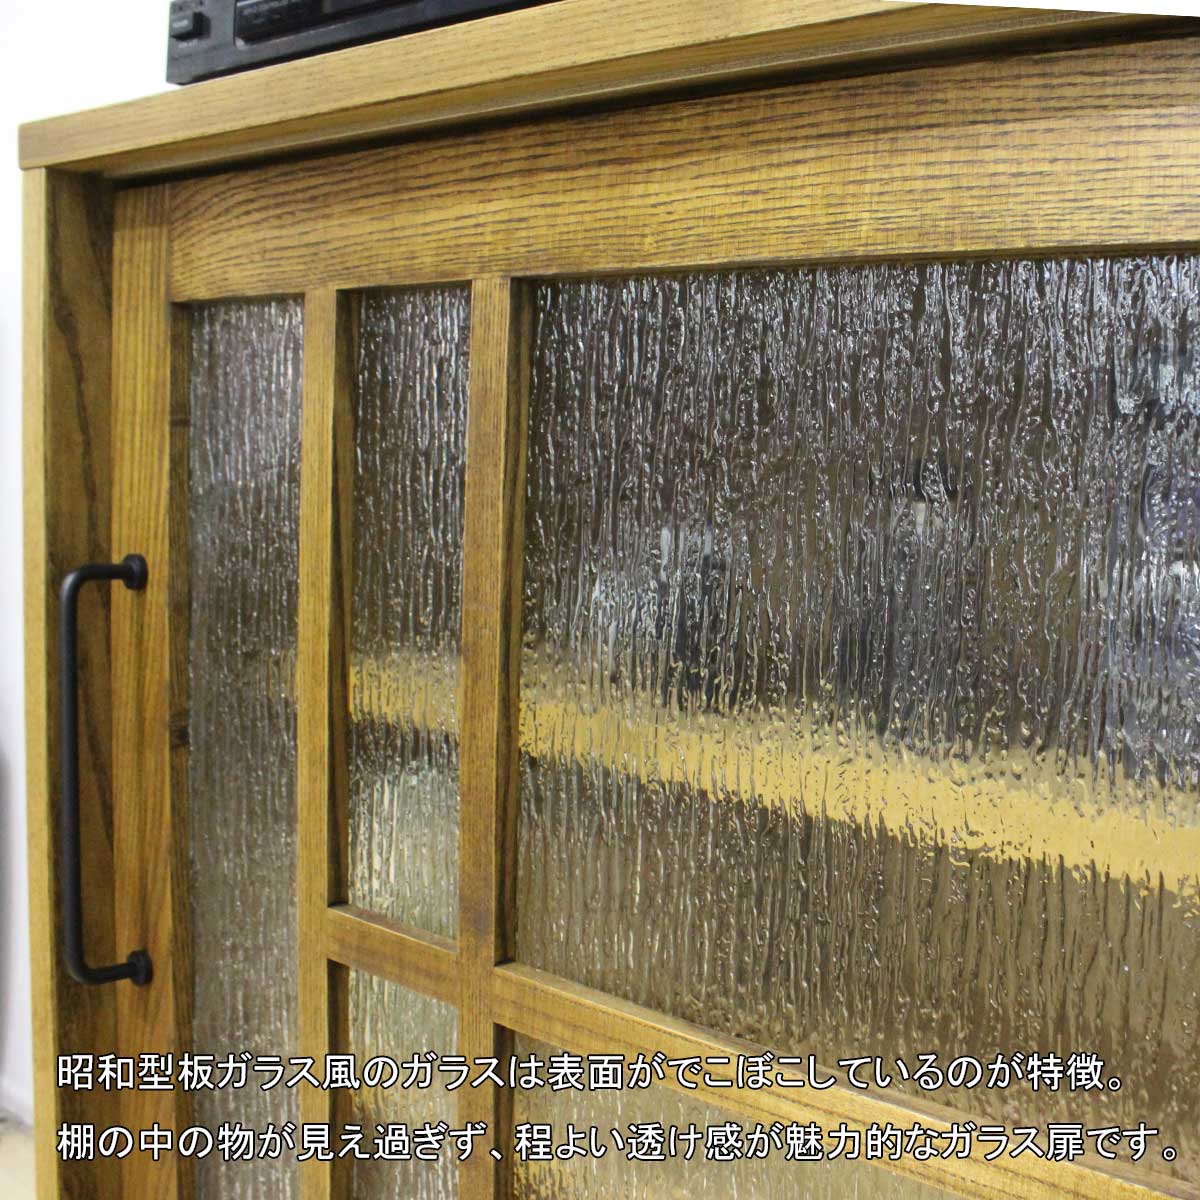 120センチ幅（幅120）キャビネット「アミコ」アッシュ材は、昭和型板ガラス風のガラスは表面がでこぼこしているのが特徴。棚の中の物が見え過ぎず、程よい透け感が魅力的なガラス扉です。